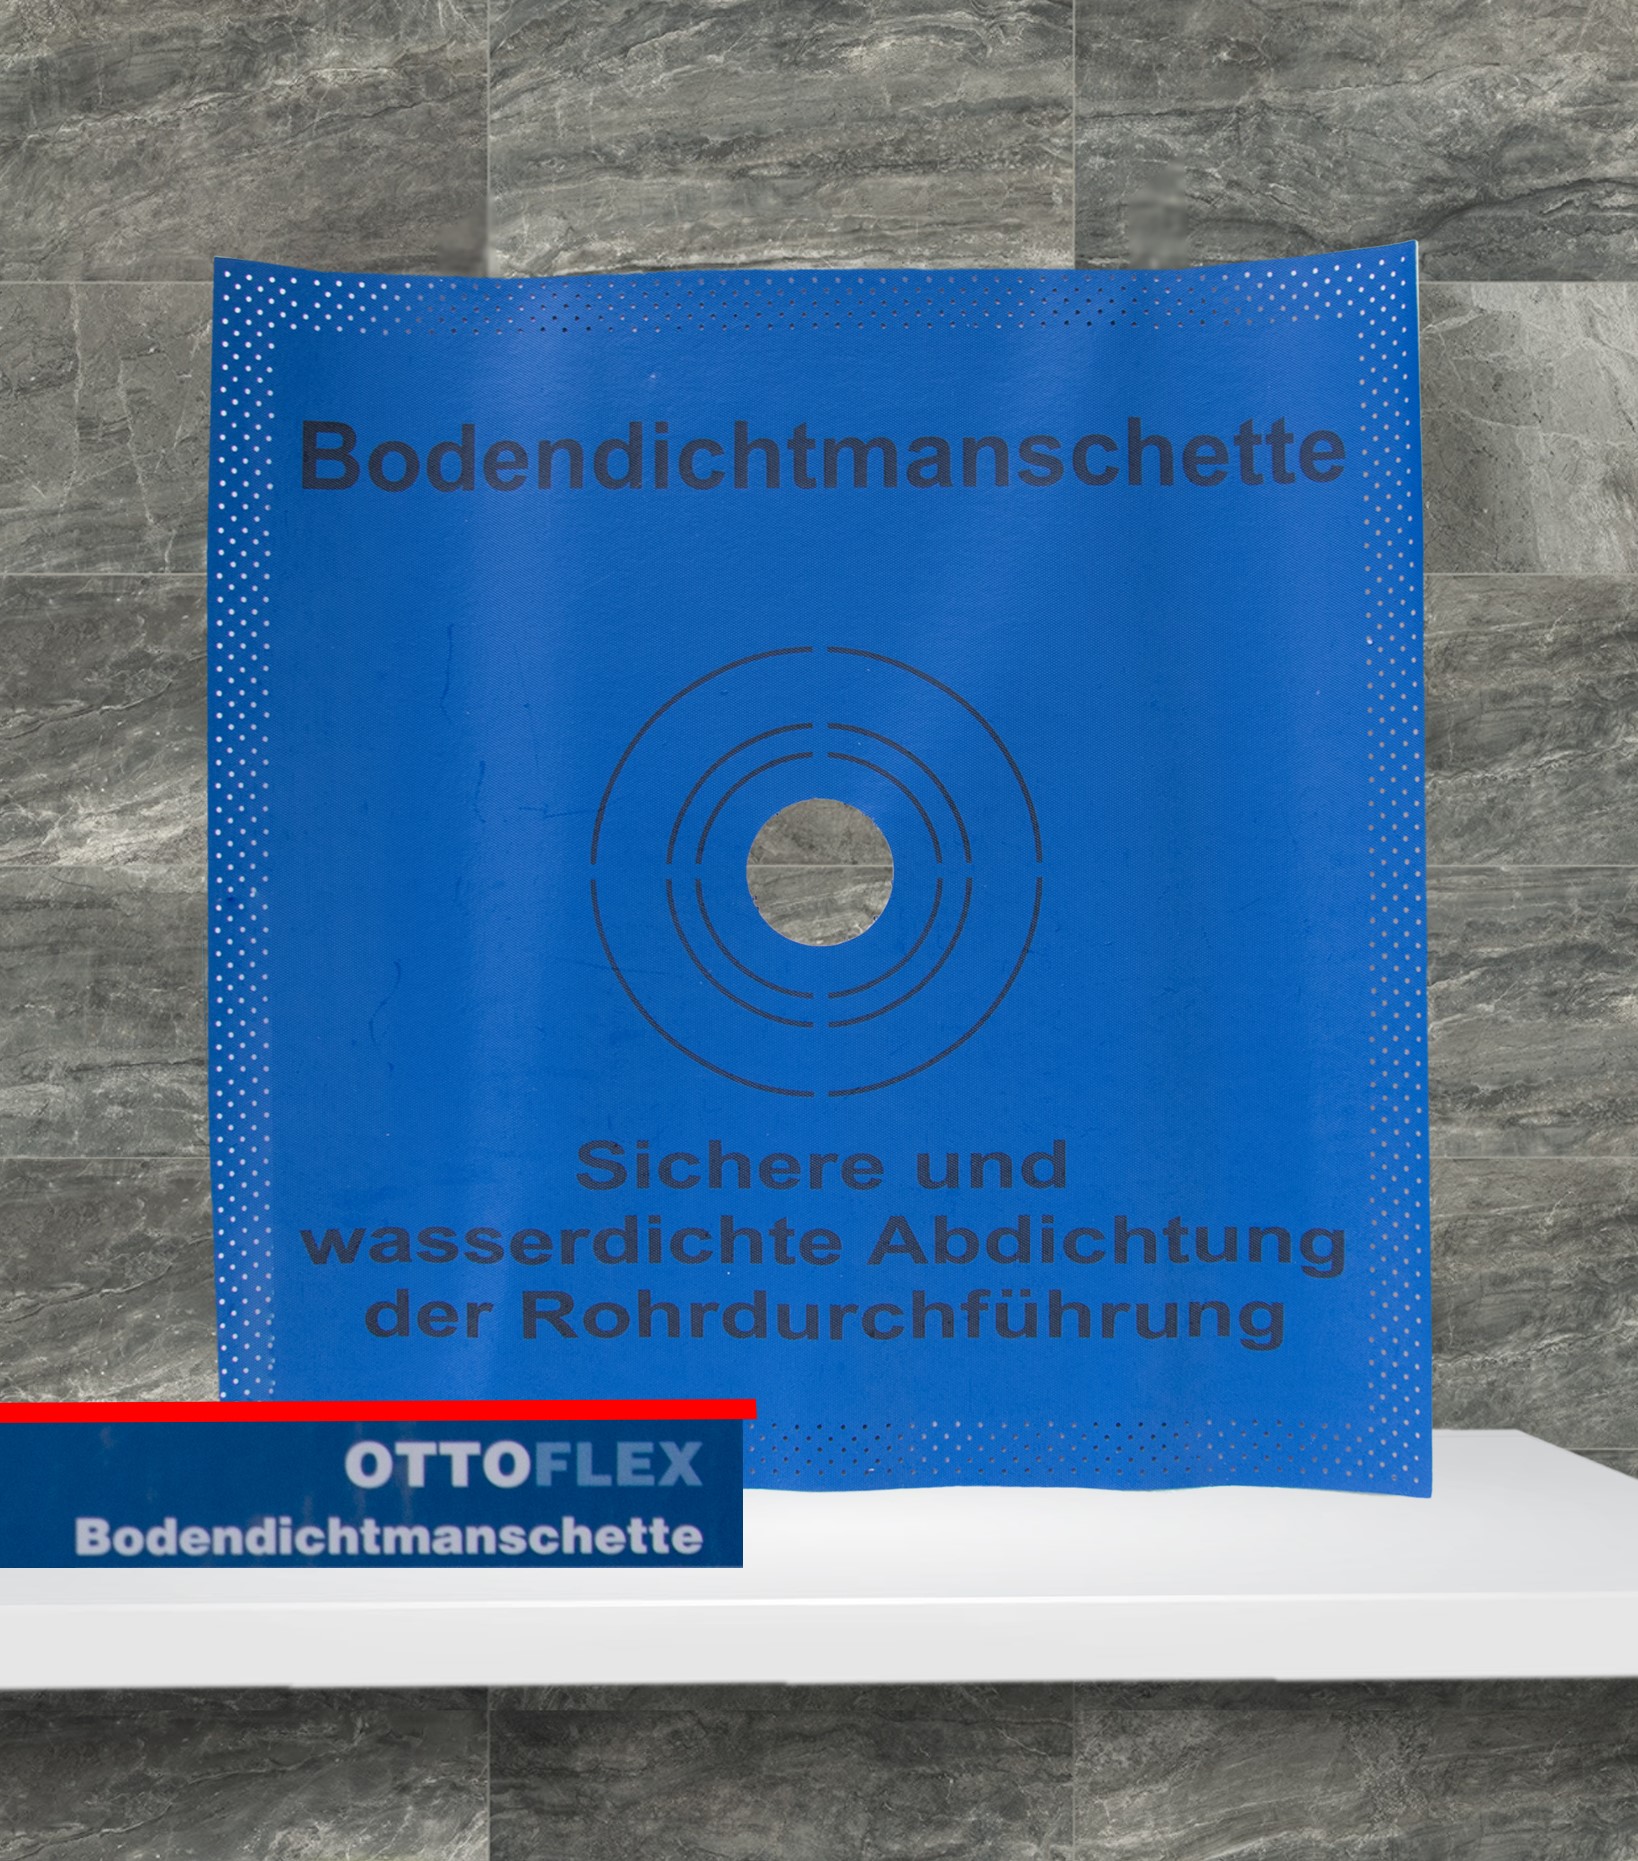 OTTOFLEX Bodendichtmanschette 42,5x42,5 cm